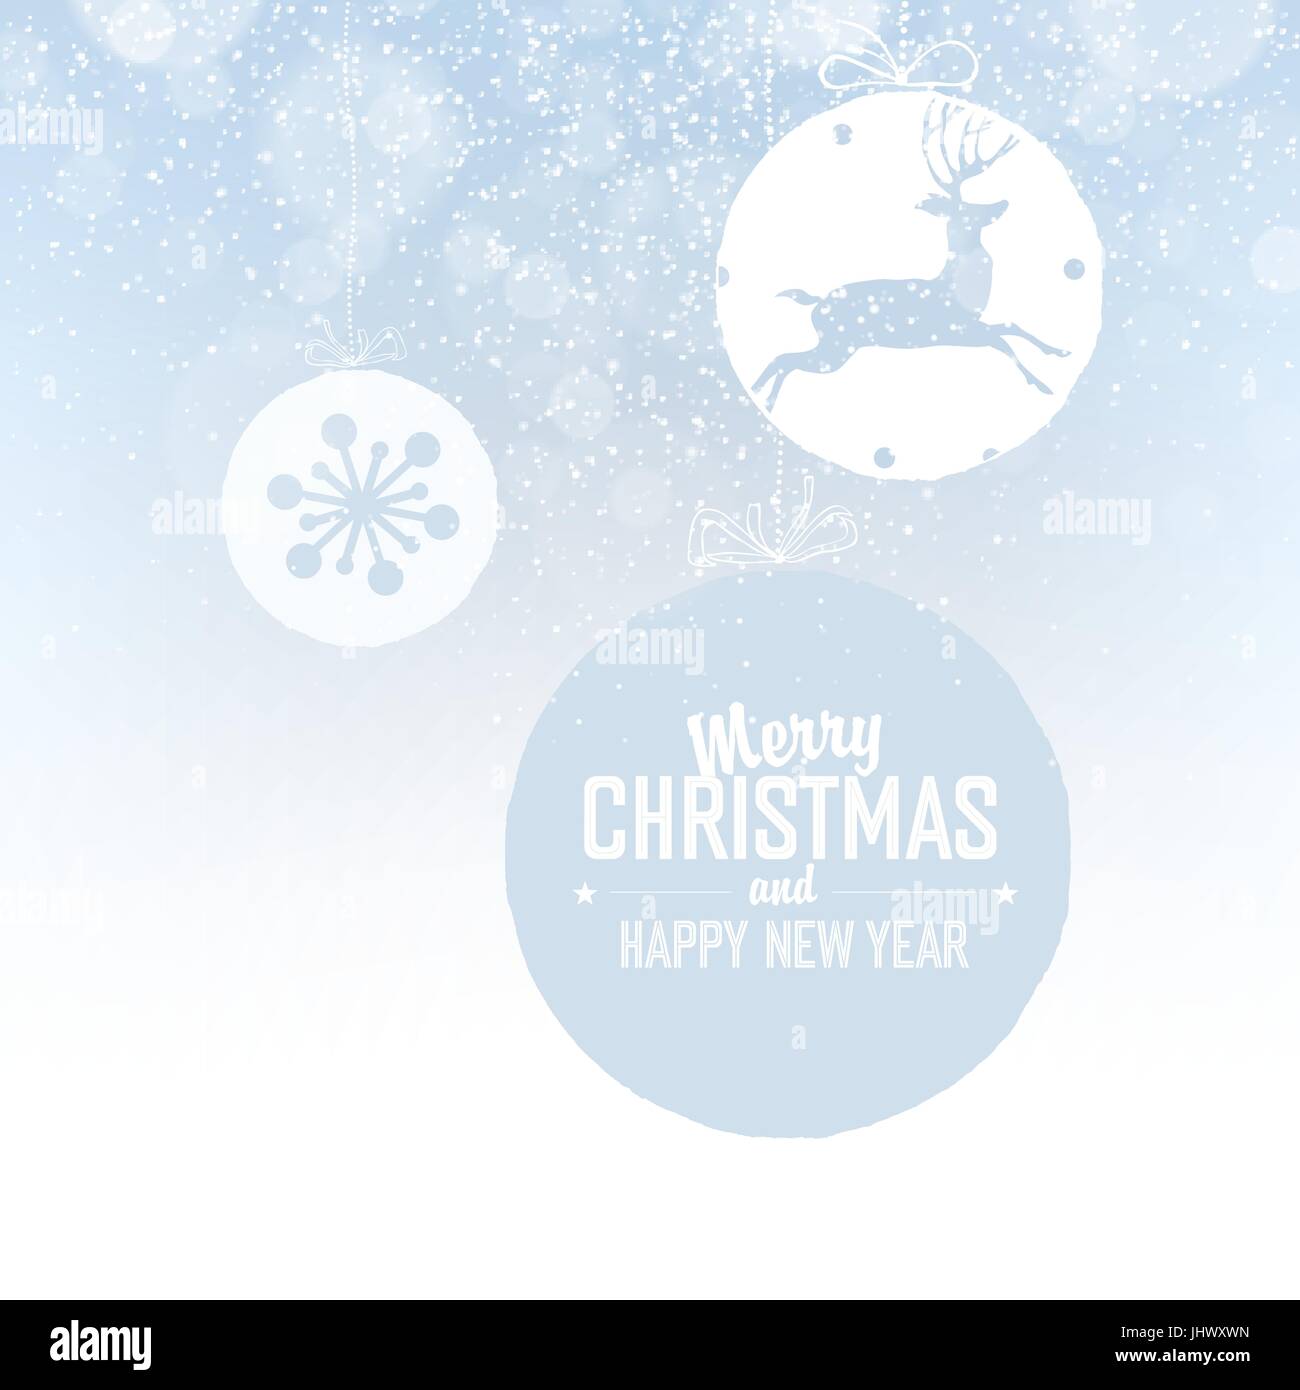 Glänzende Xmas-Ball mit Hirsch für Frohe Weihnachten Feier am hellblauen Hintergrund mit Schneeflocken. Vektor-illustration Stock Vektor